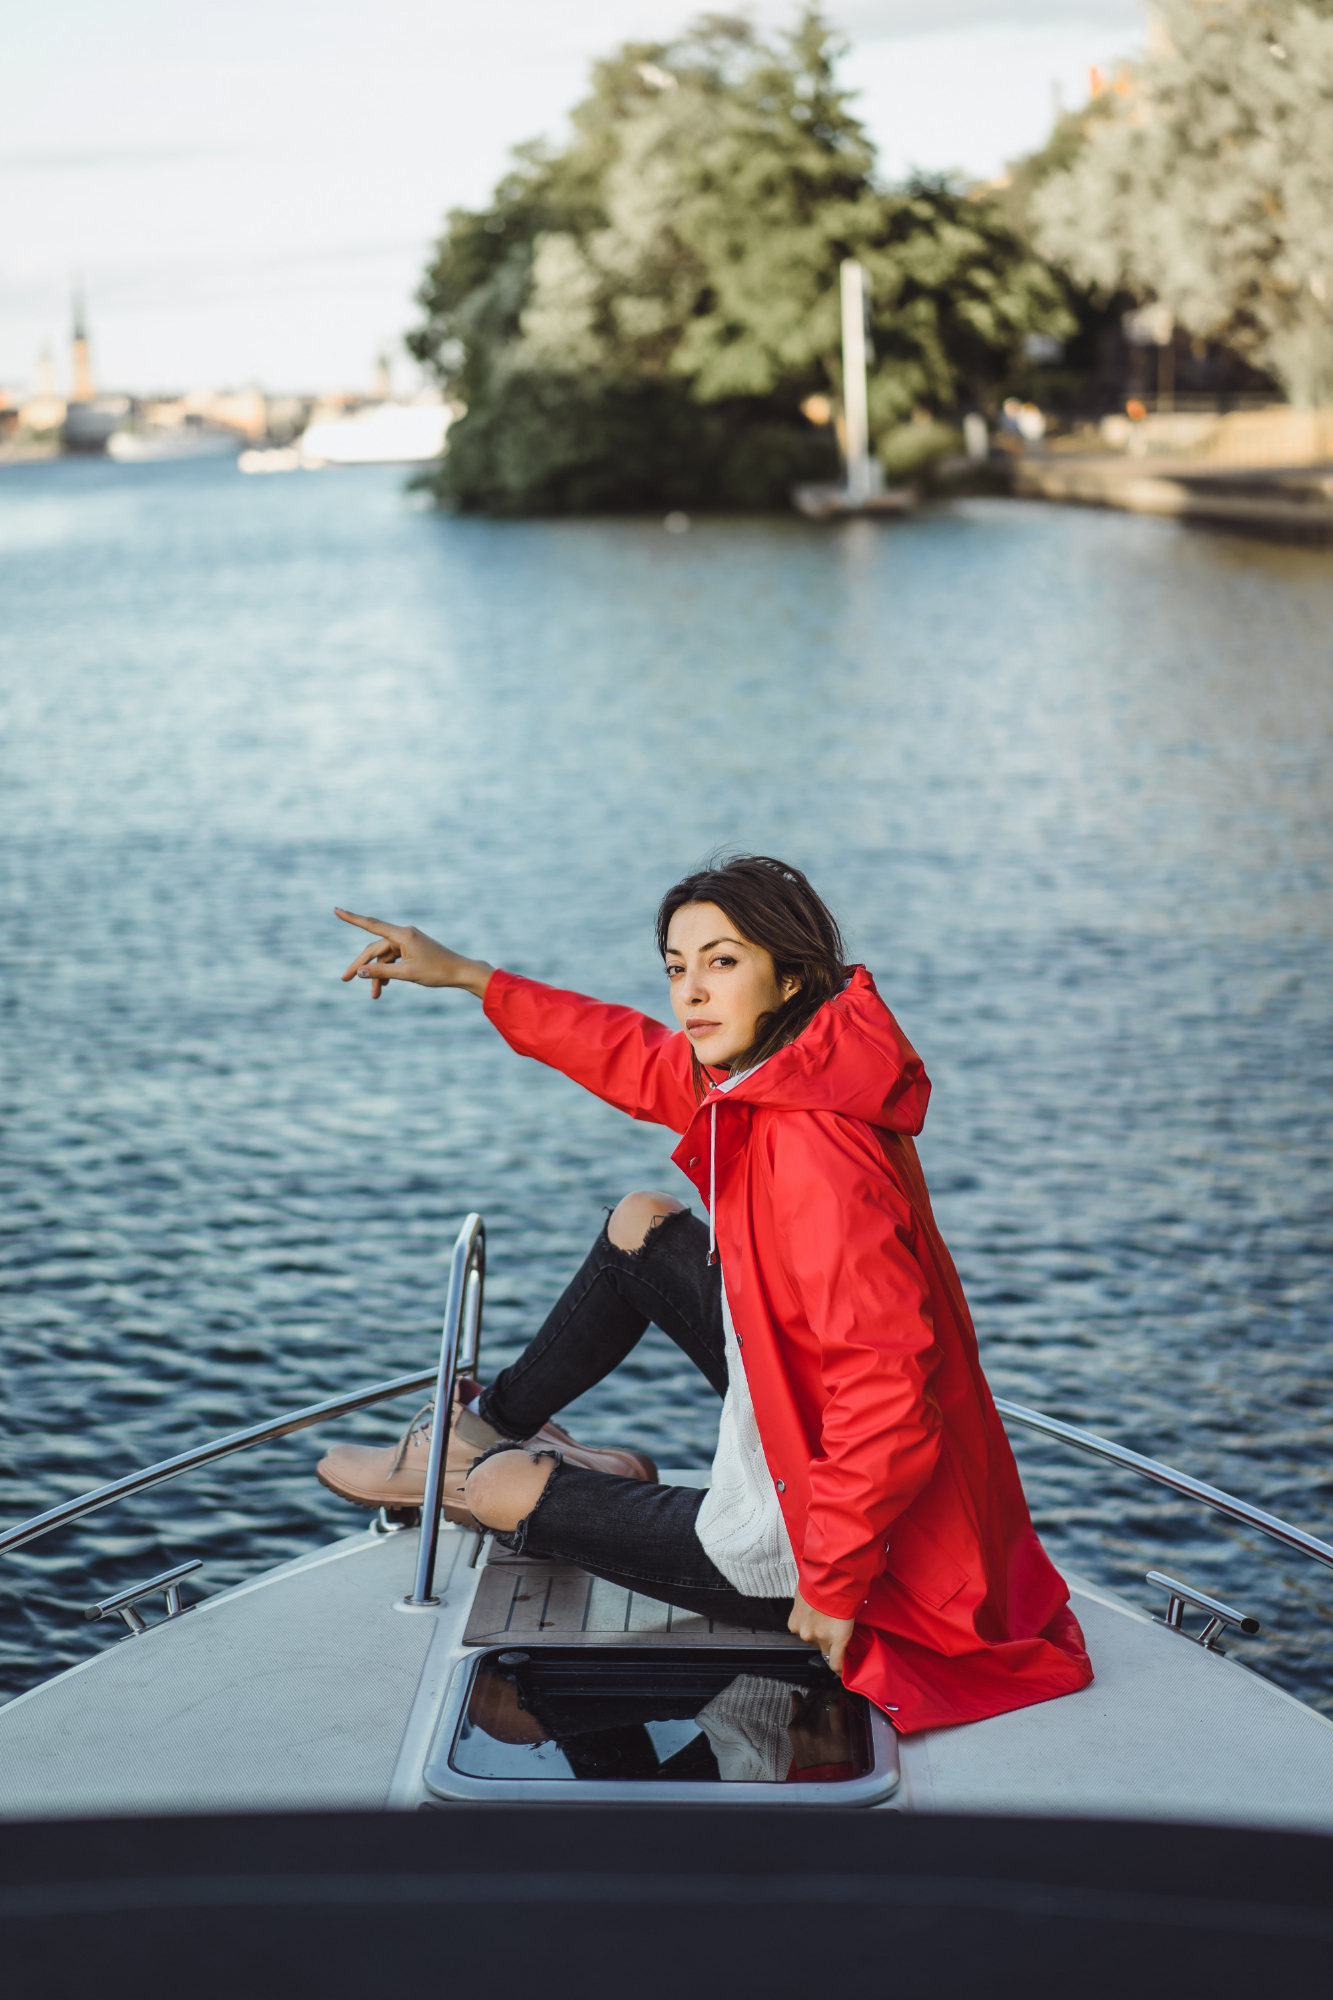 Une femme photographiée avec sa main tendue par-dessus bord d'un bateau | Source : Freepik